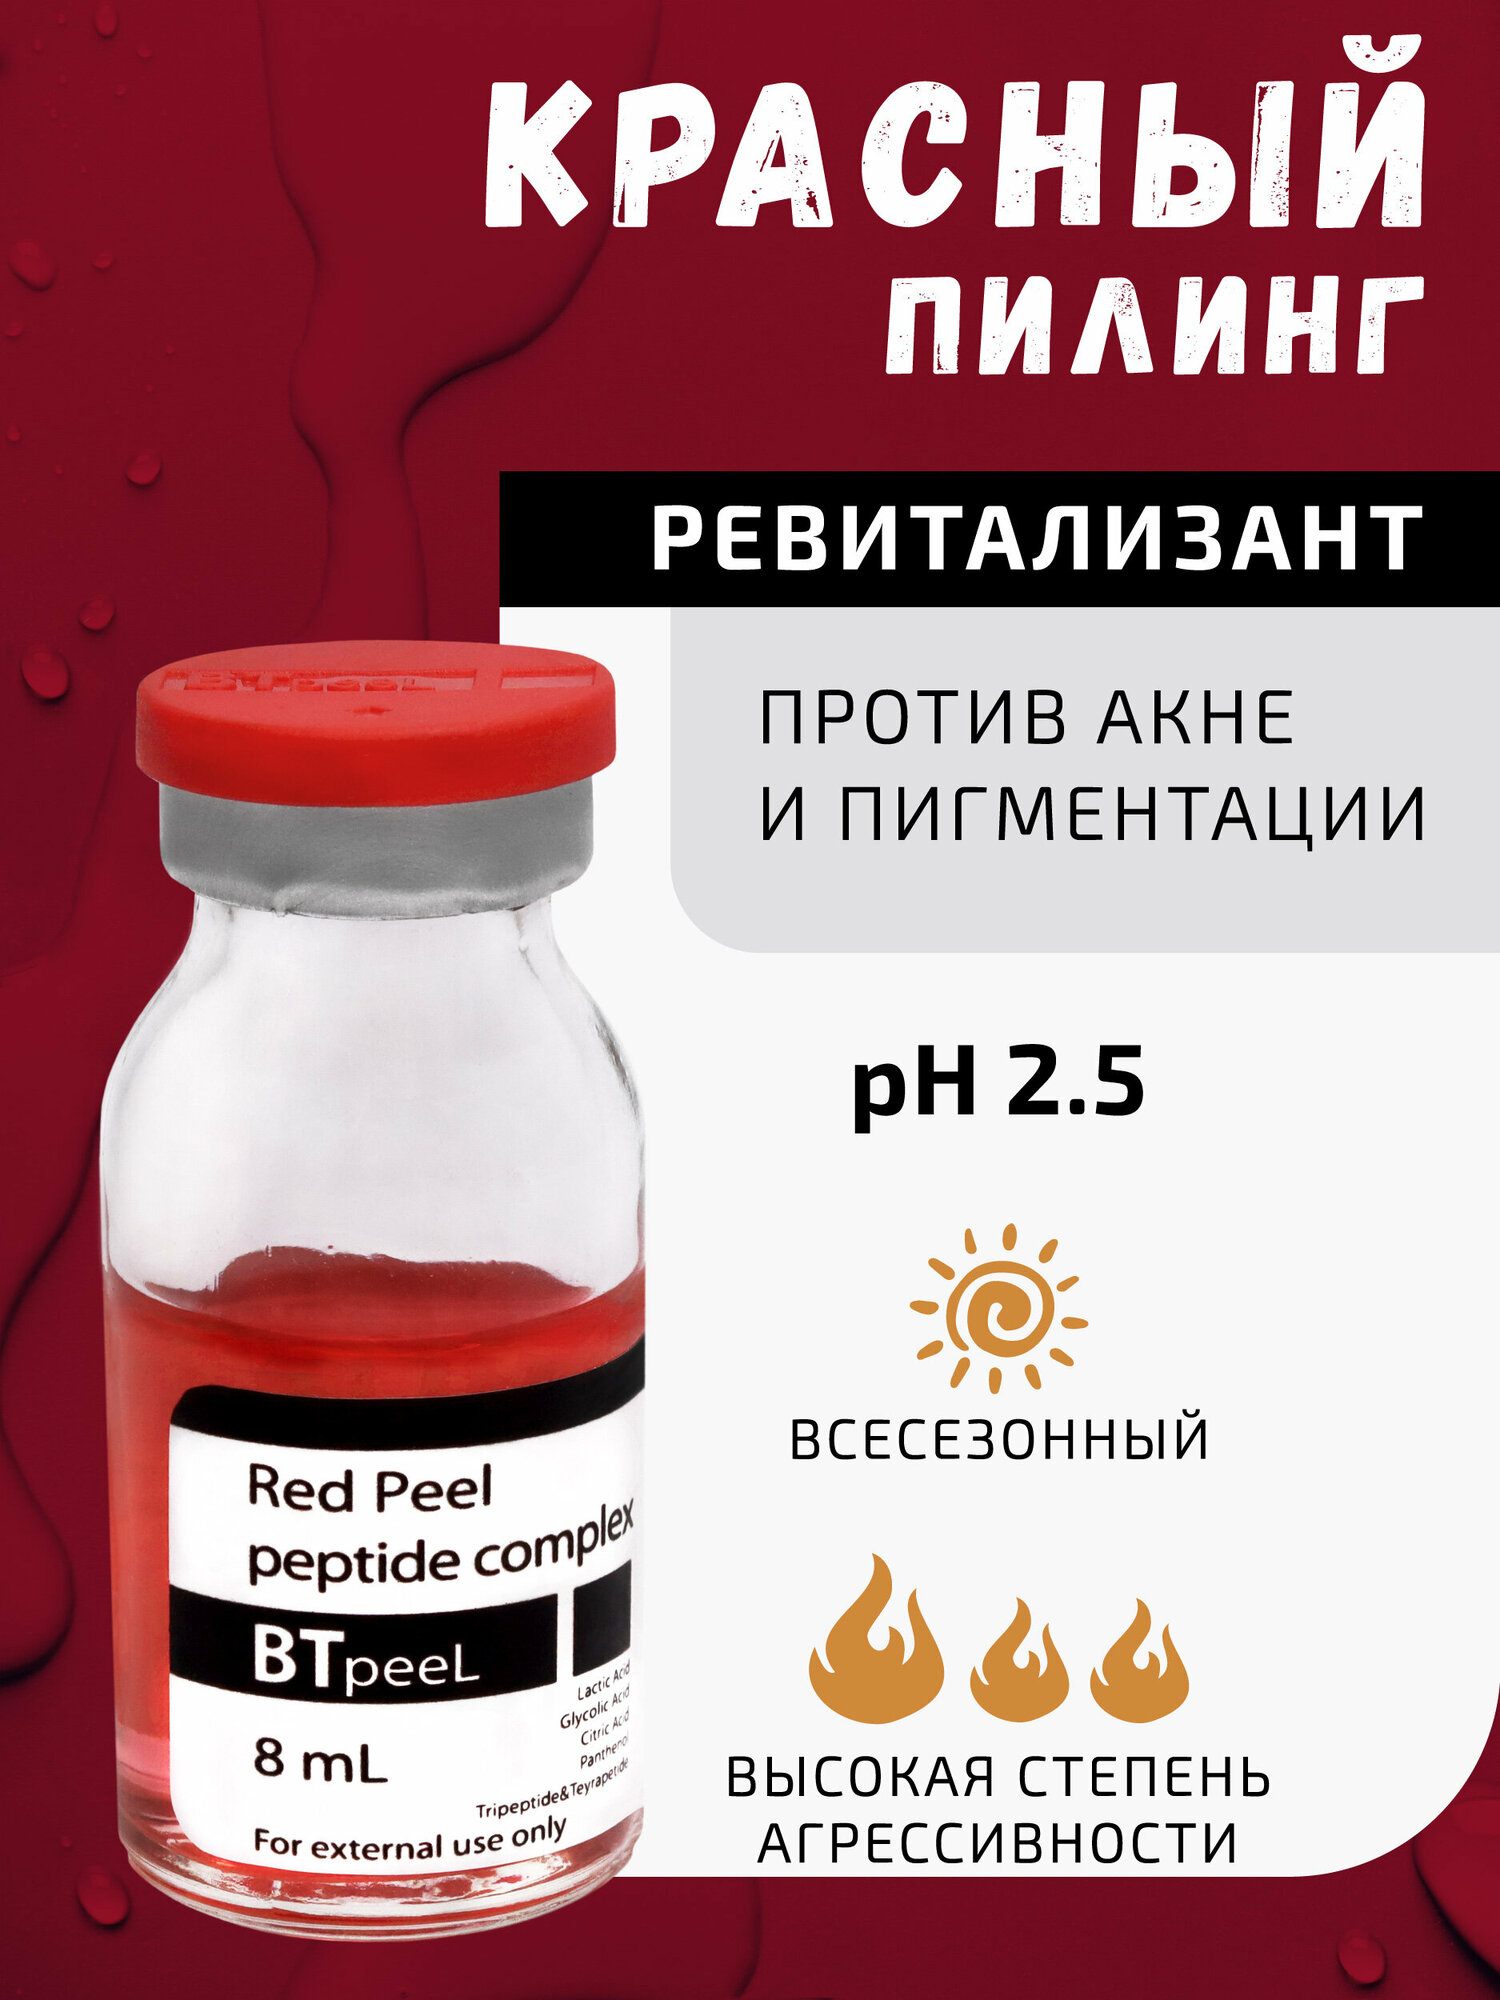 Красный пилинг-ревитализант с пептидным комплексом Red peeling BTpeel, 8 мл.